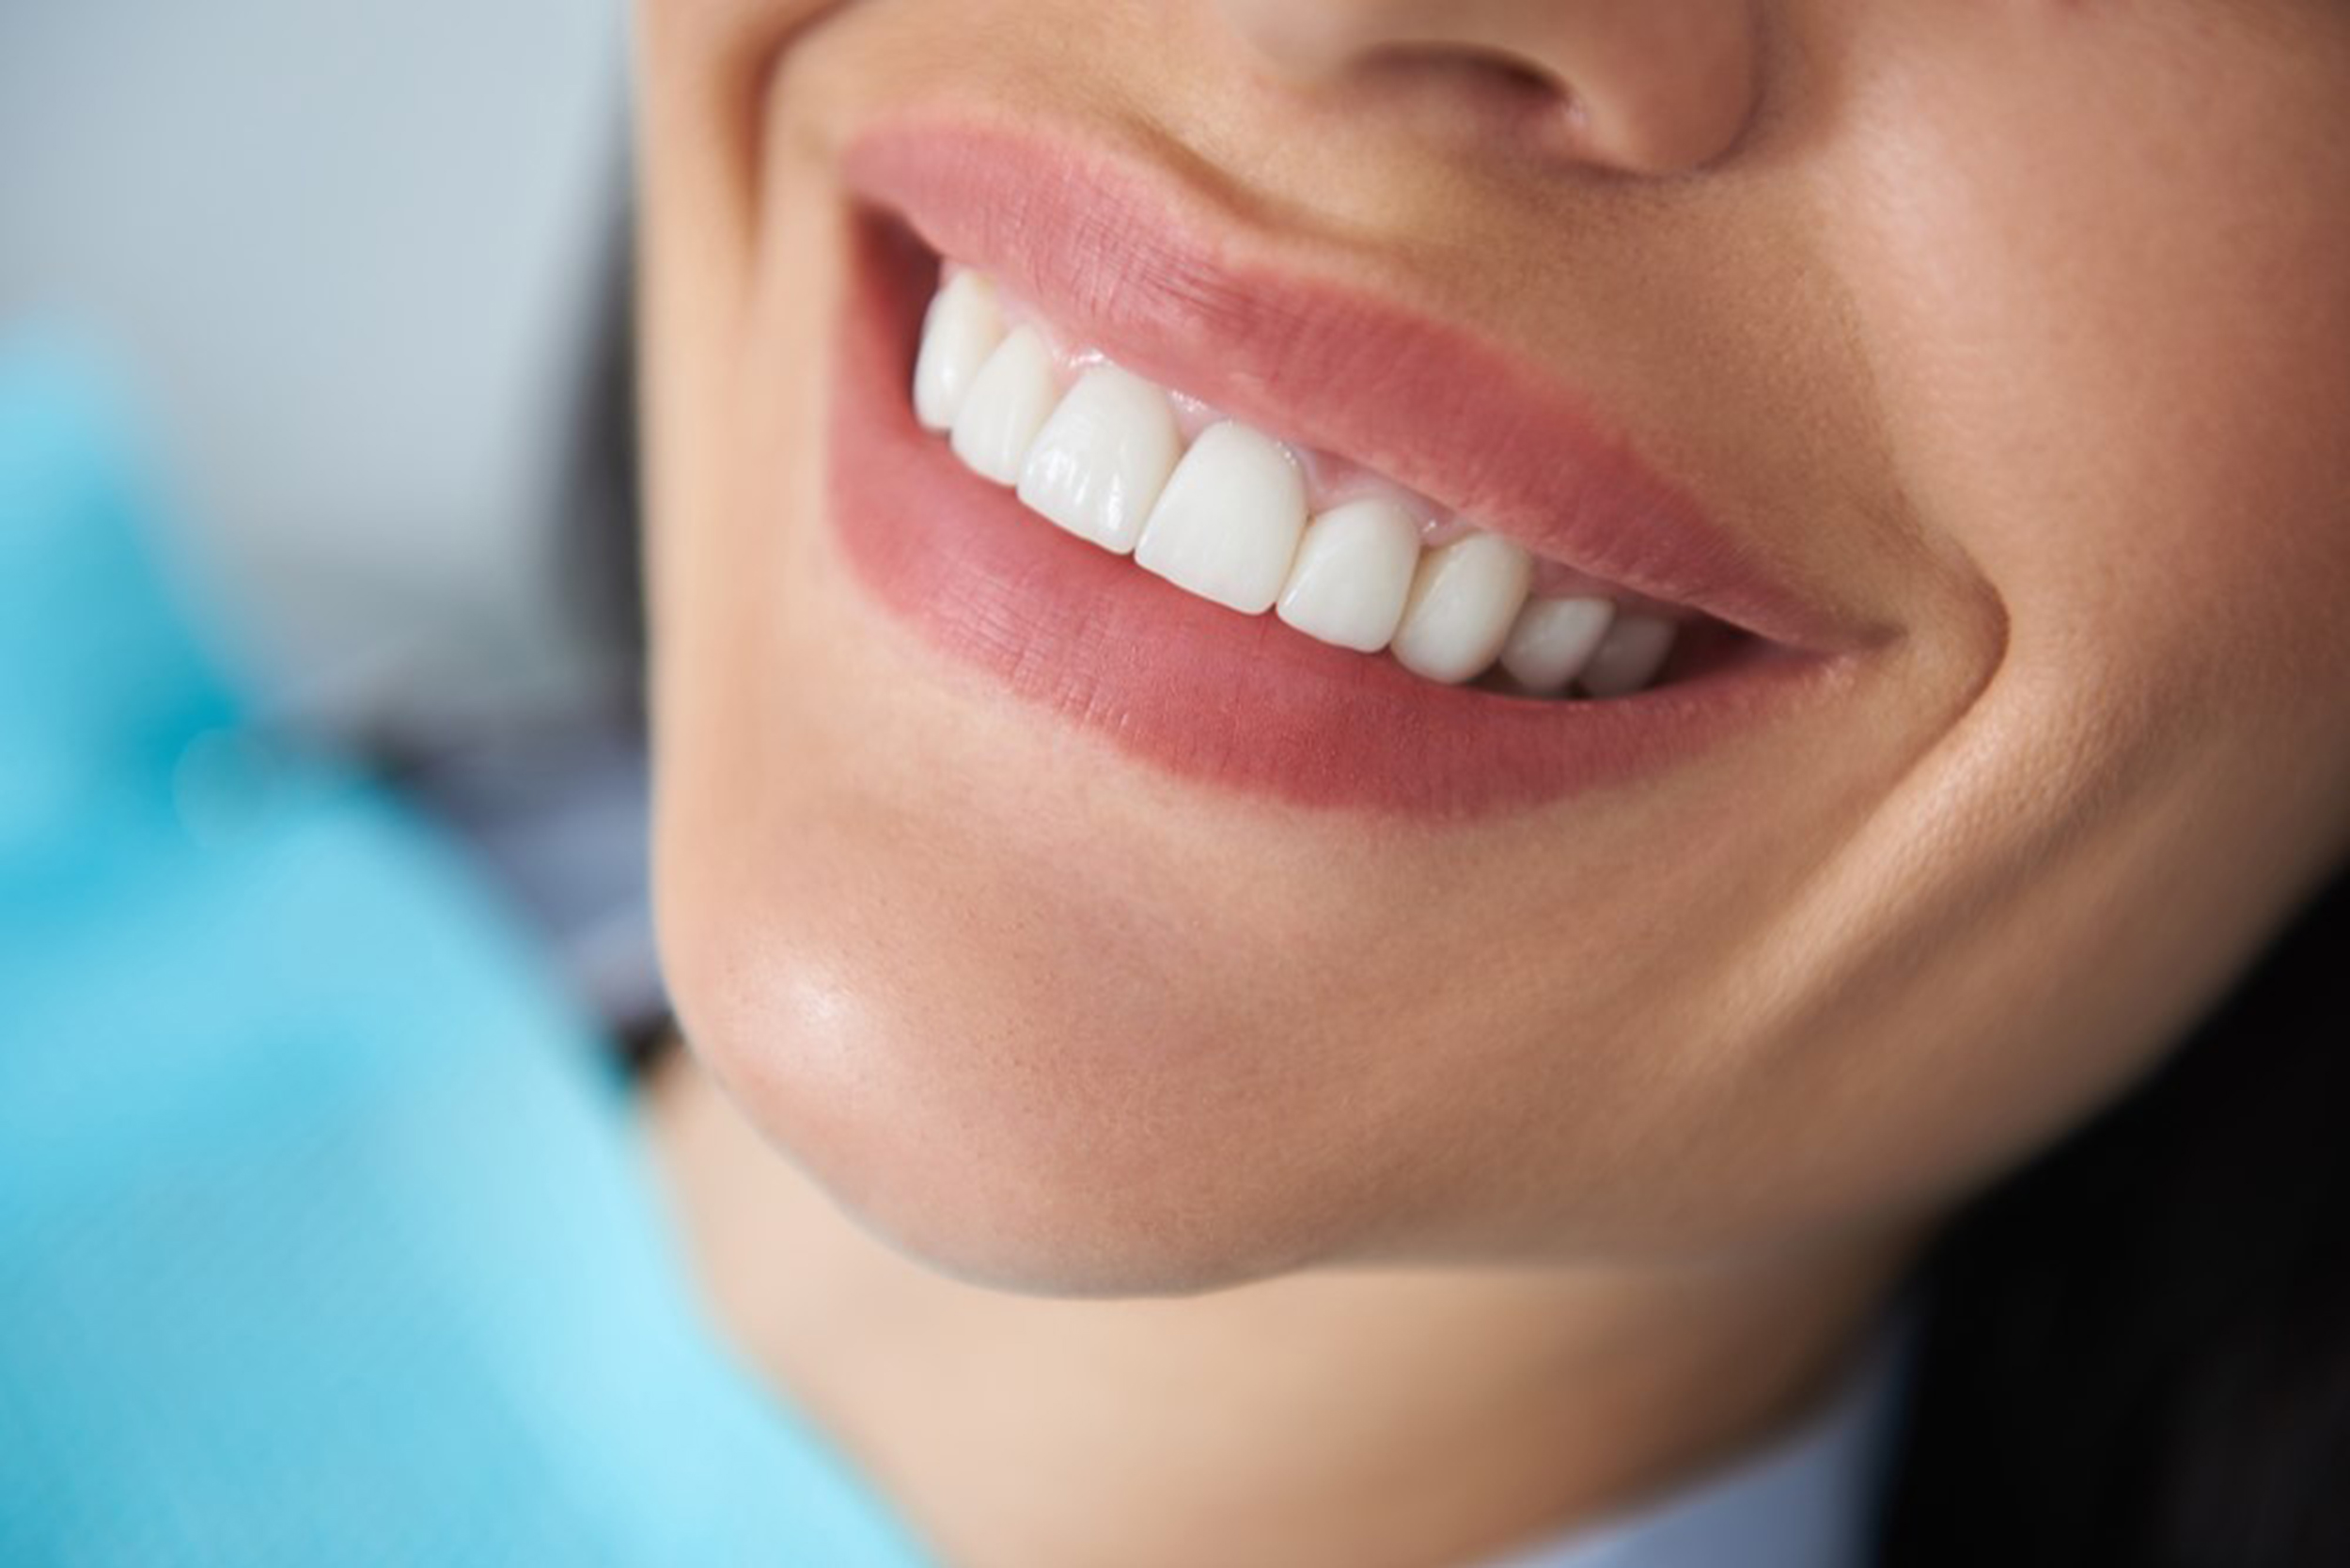 teeth whitening procedure works